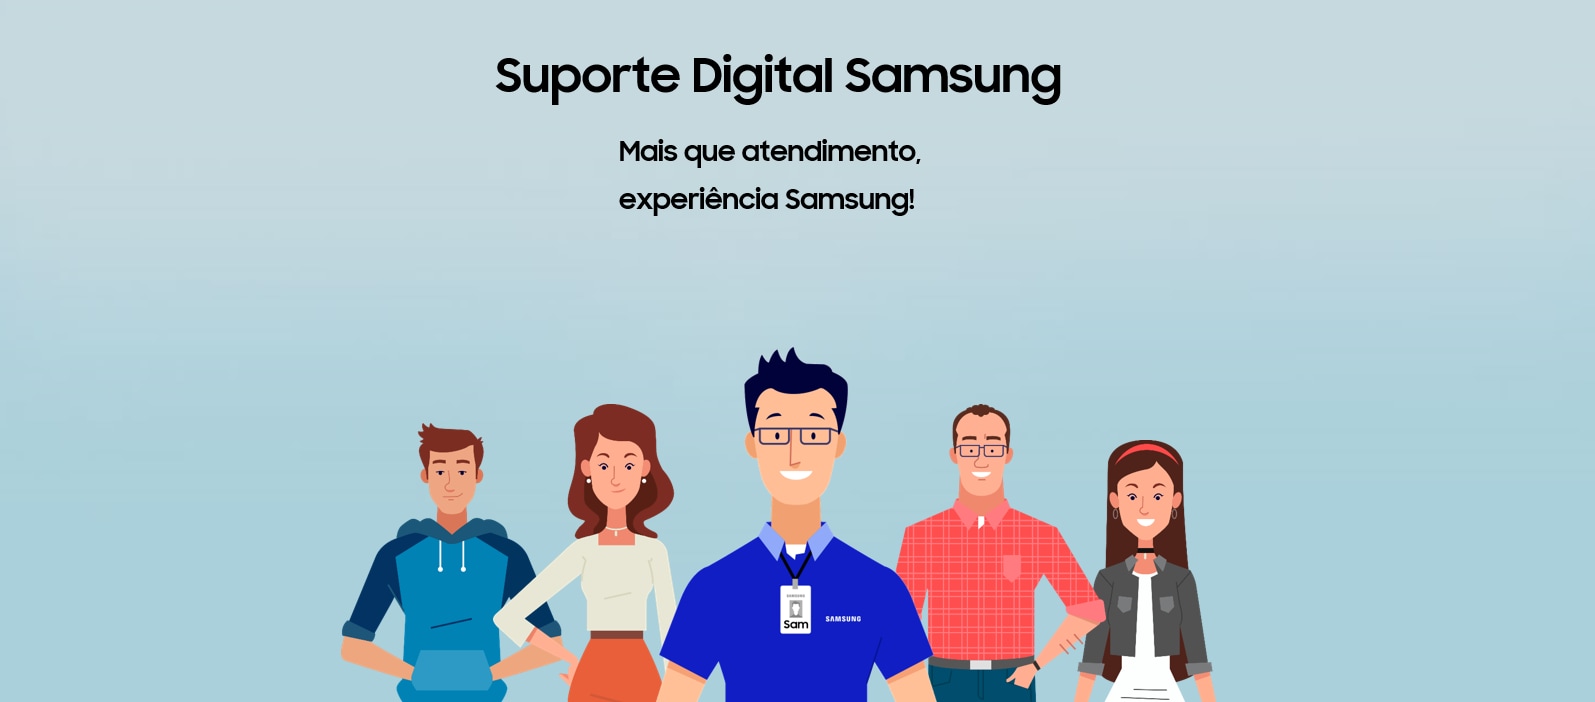 Agora o atendimento telefônico Samsung também é Digital.